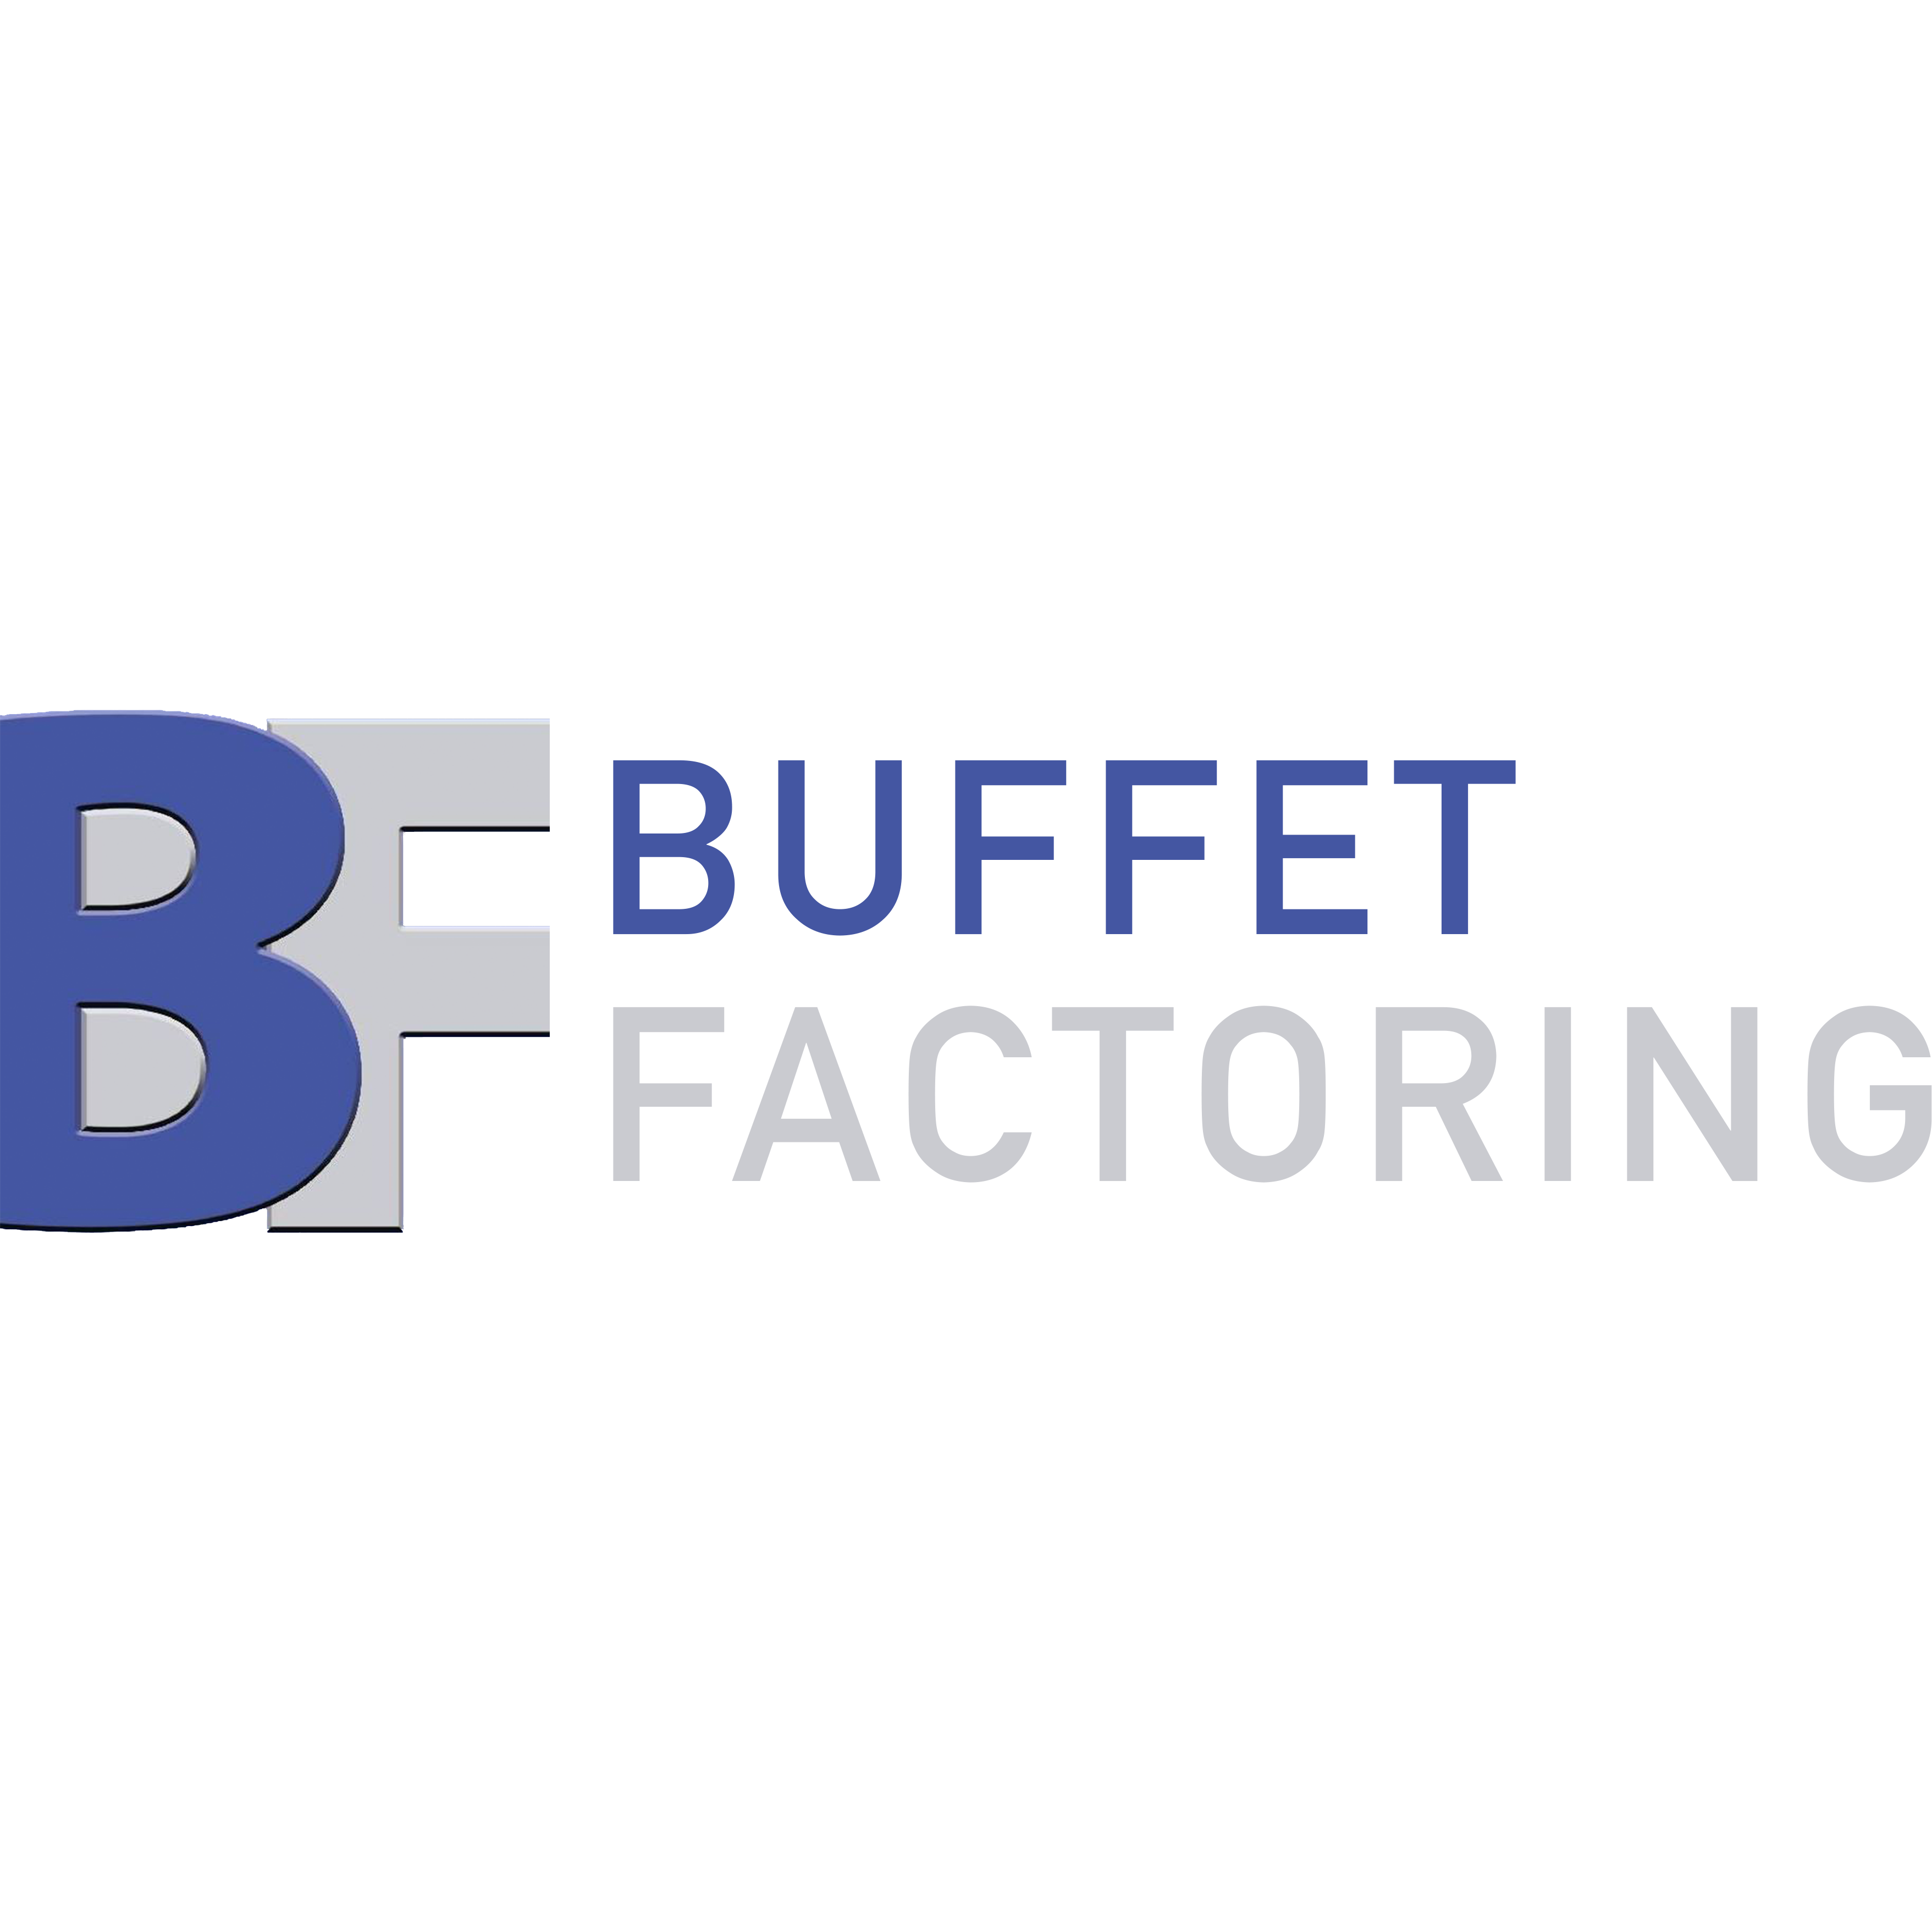 Buffet Factoring Photo